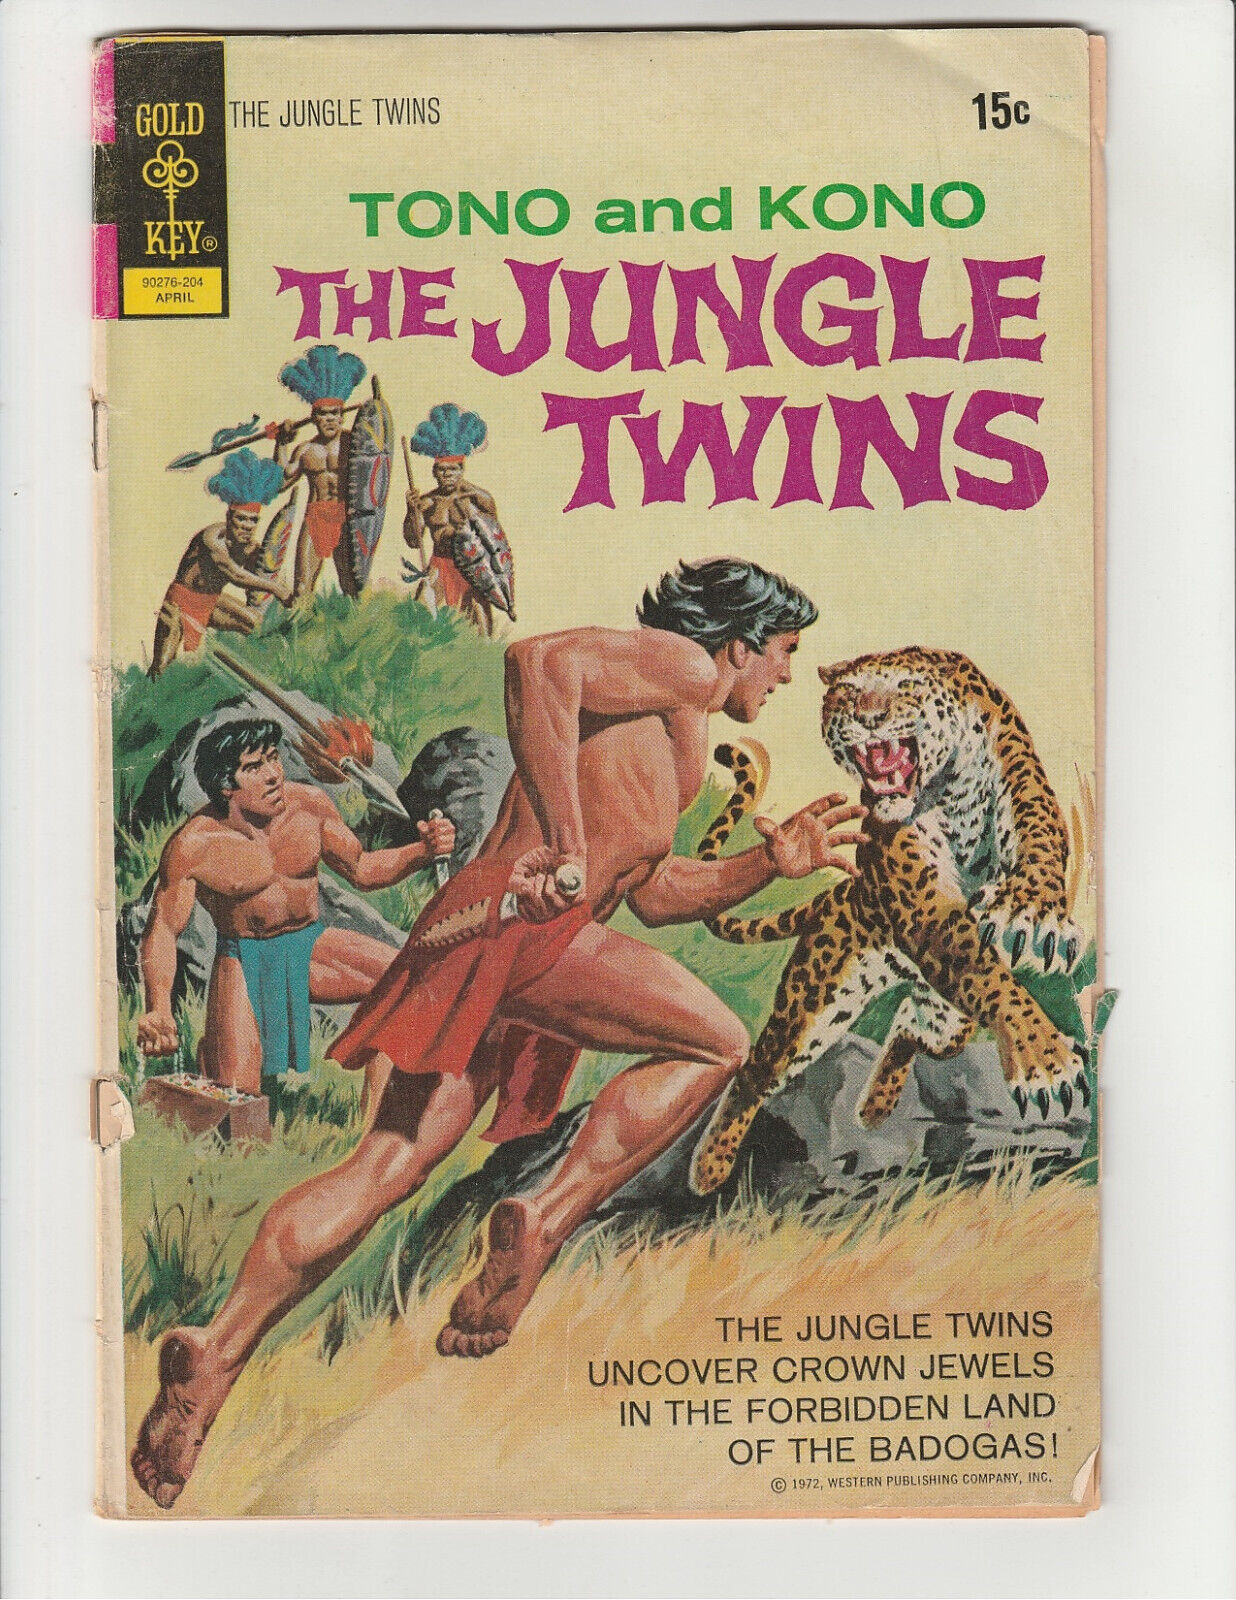 The Jungle Twins #1 Tono and Kono (Gold Key 1972) Comic (4.0) Very-Good (VG)